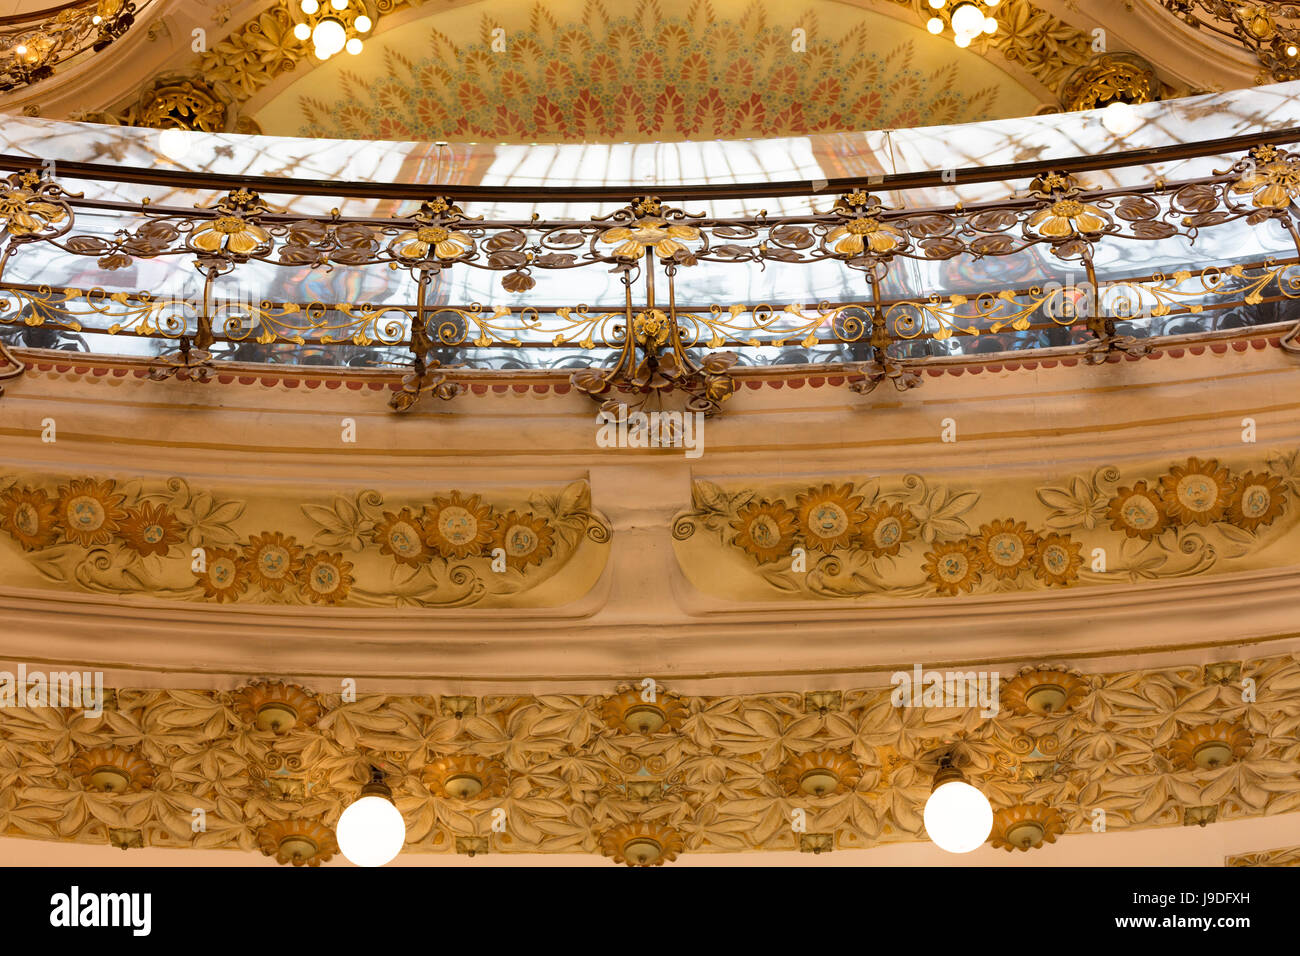 central dome, Galeries Lafayette department store, Boulevard Haussmann, Paris, France Stock Photo